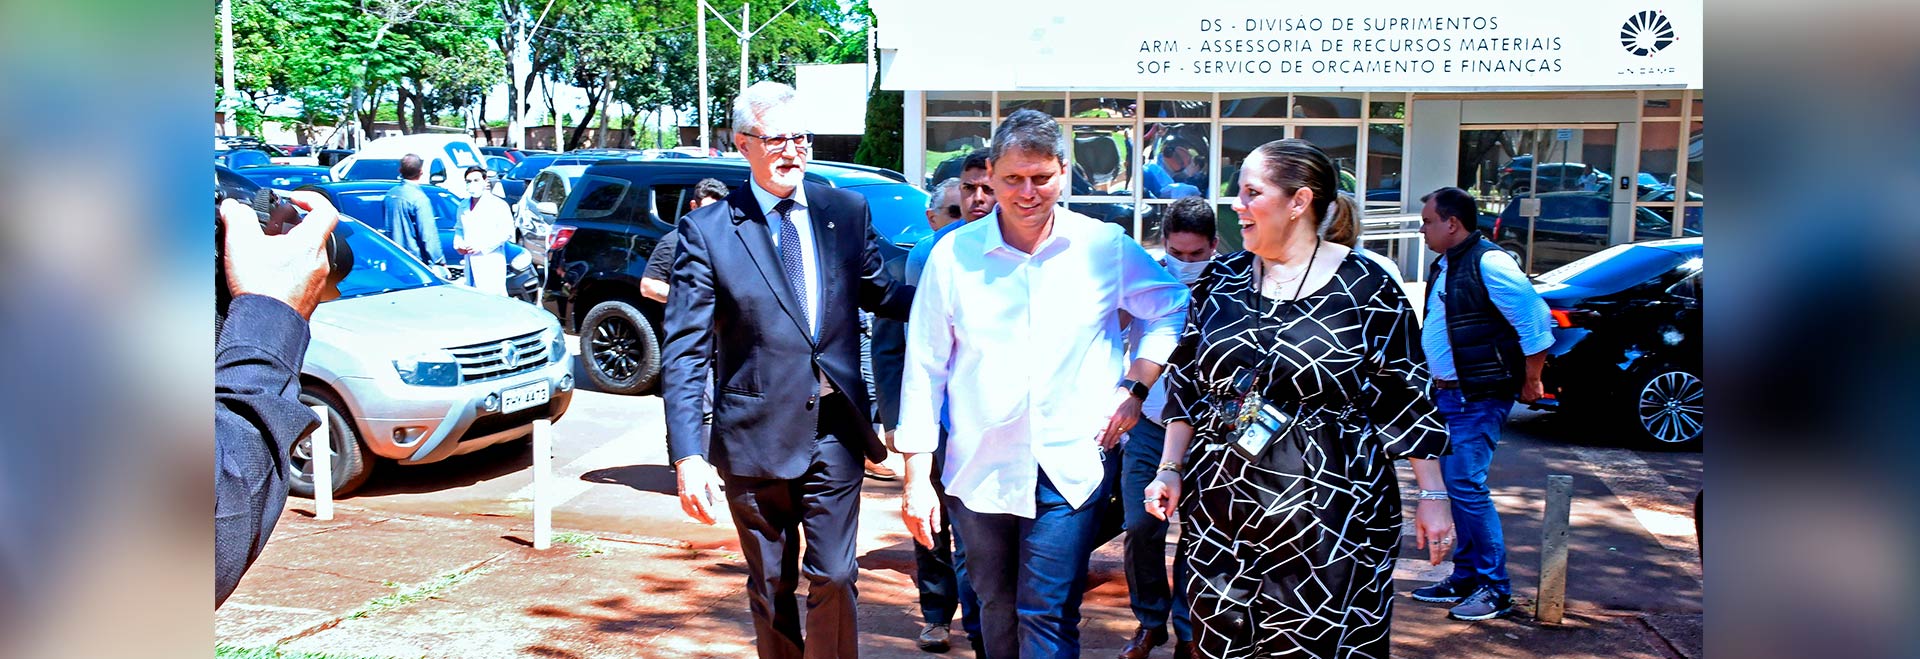 O governador Tarcísio de Freitas (ao centro) ao lado do reitor Antonio Meirelles (à esquerda) e Elaine Ataíde (à direita): visita tratou de mutirões de cirurgia eletiva e custeio do hospital  